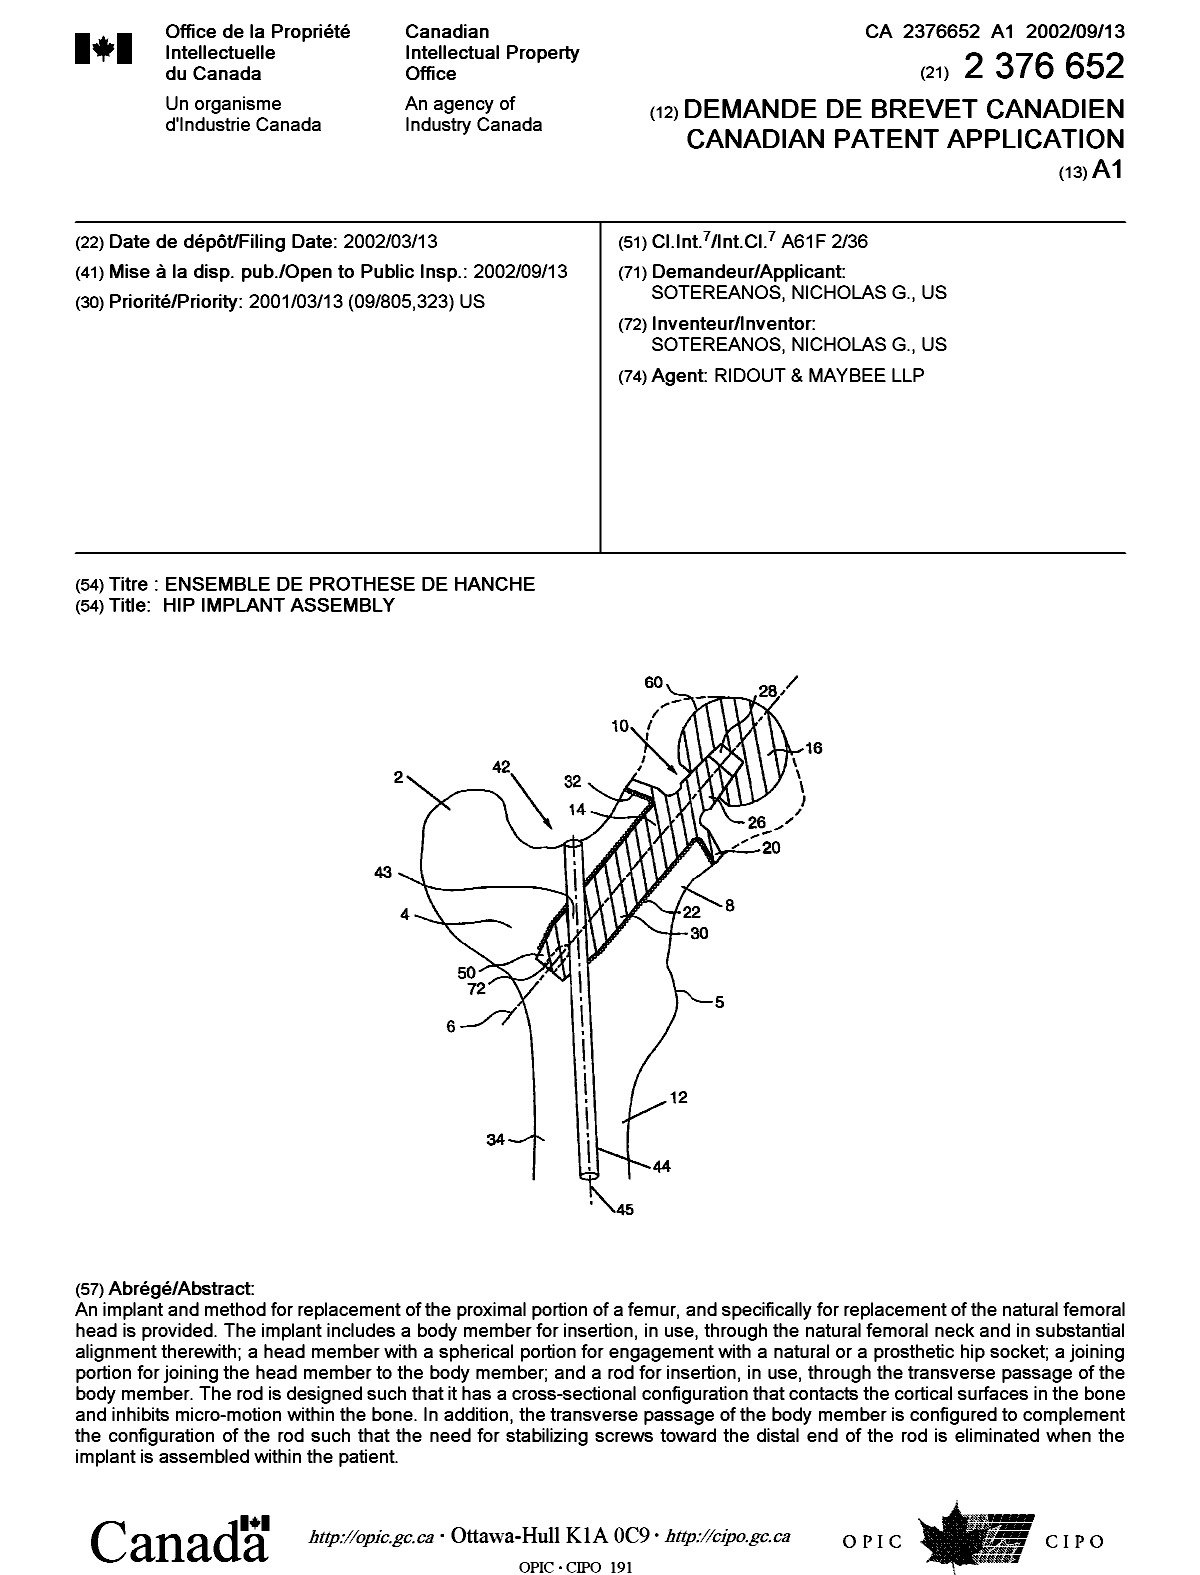 Document de brevet canadien 2376652. Page couverture 20020823. Image 1 de 1